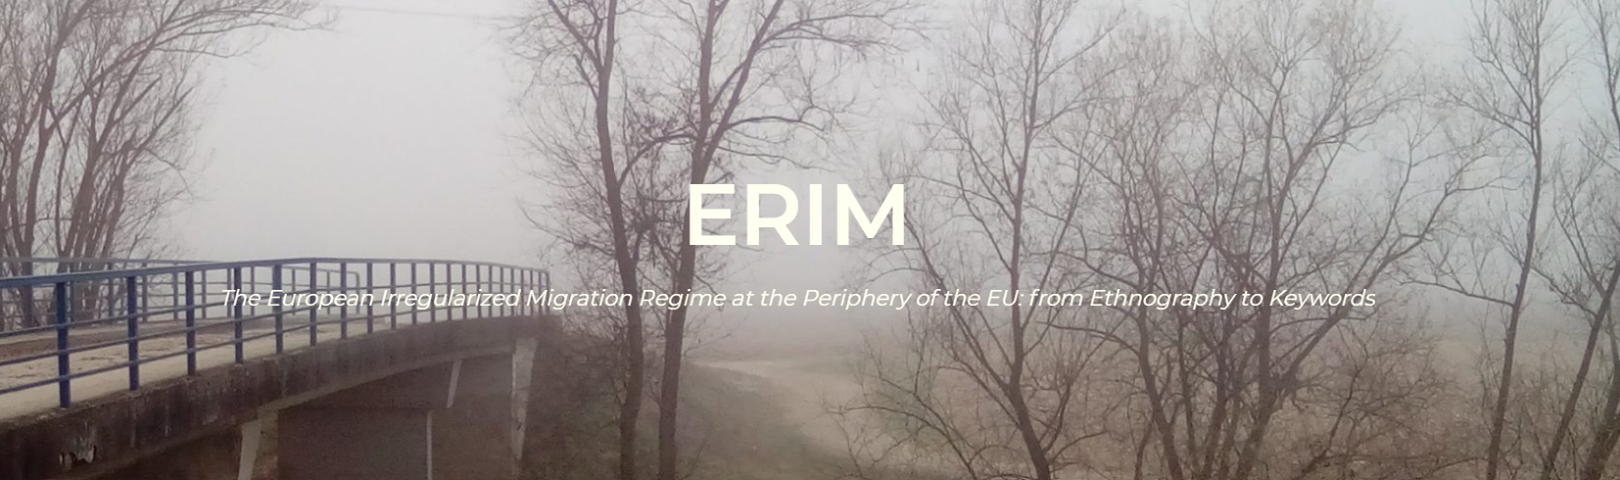 Poziv na predstavljanje e-ERIMA u Beogradu